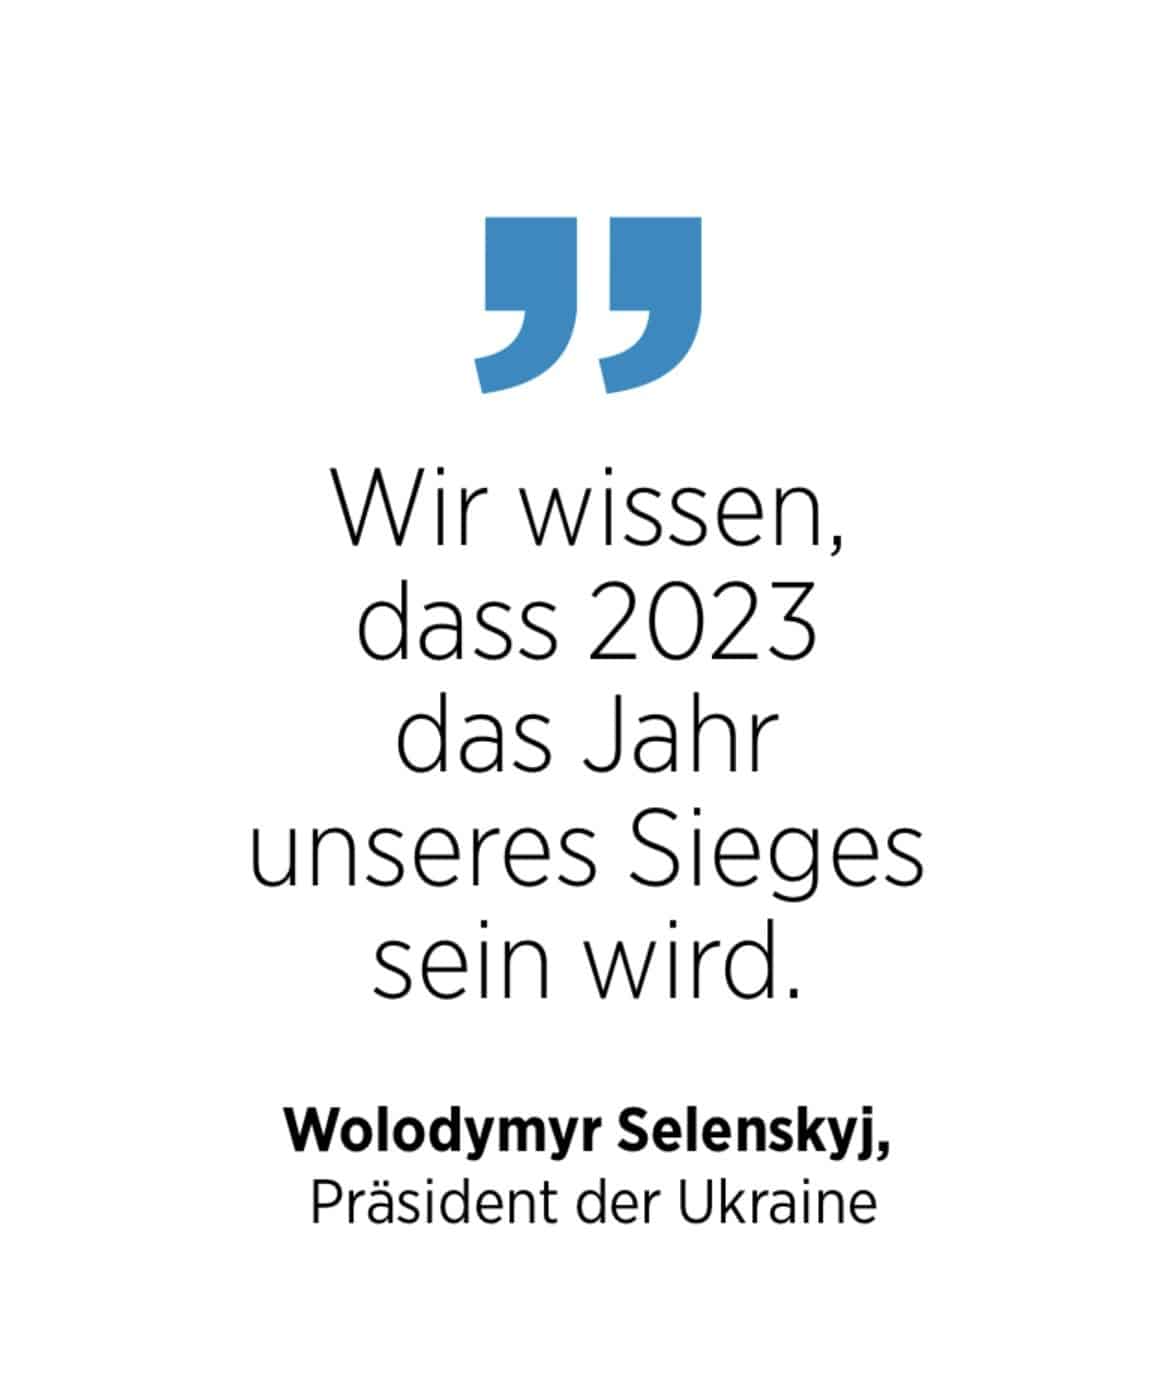 Wolodymyr Selenskyi, Präsident der Ukraine, zum Siegesjahr 2023 der Ukraine